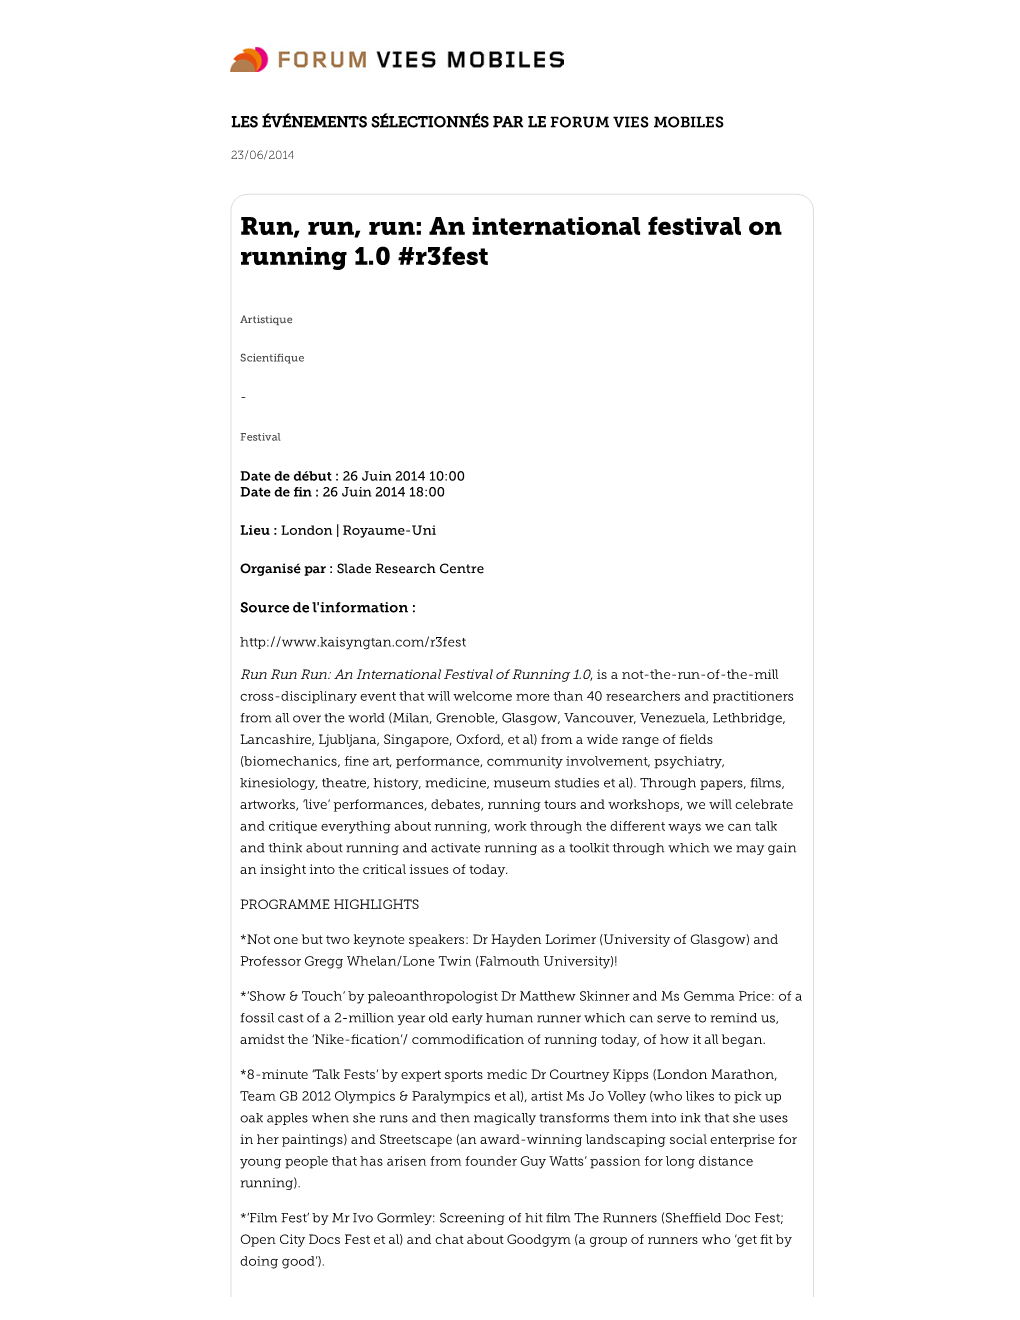 An International Festival on Running 1.0 #R3fest